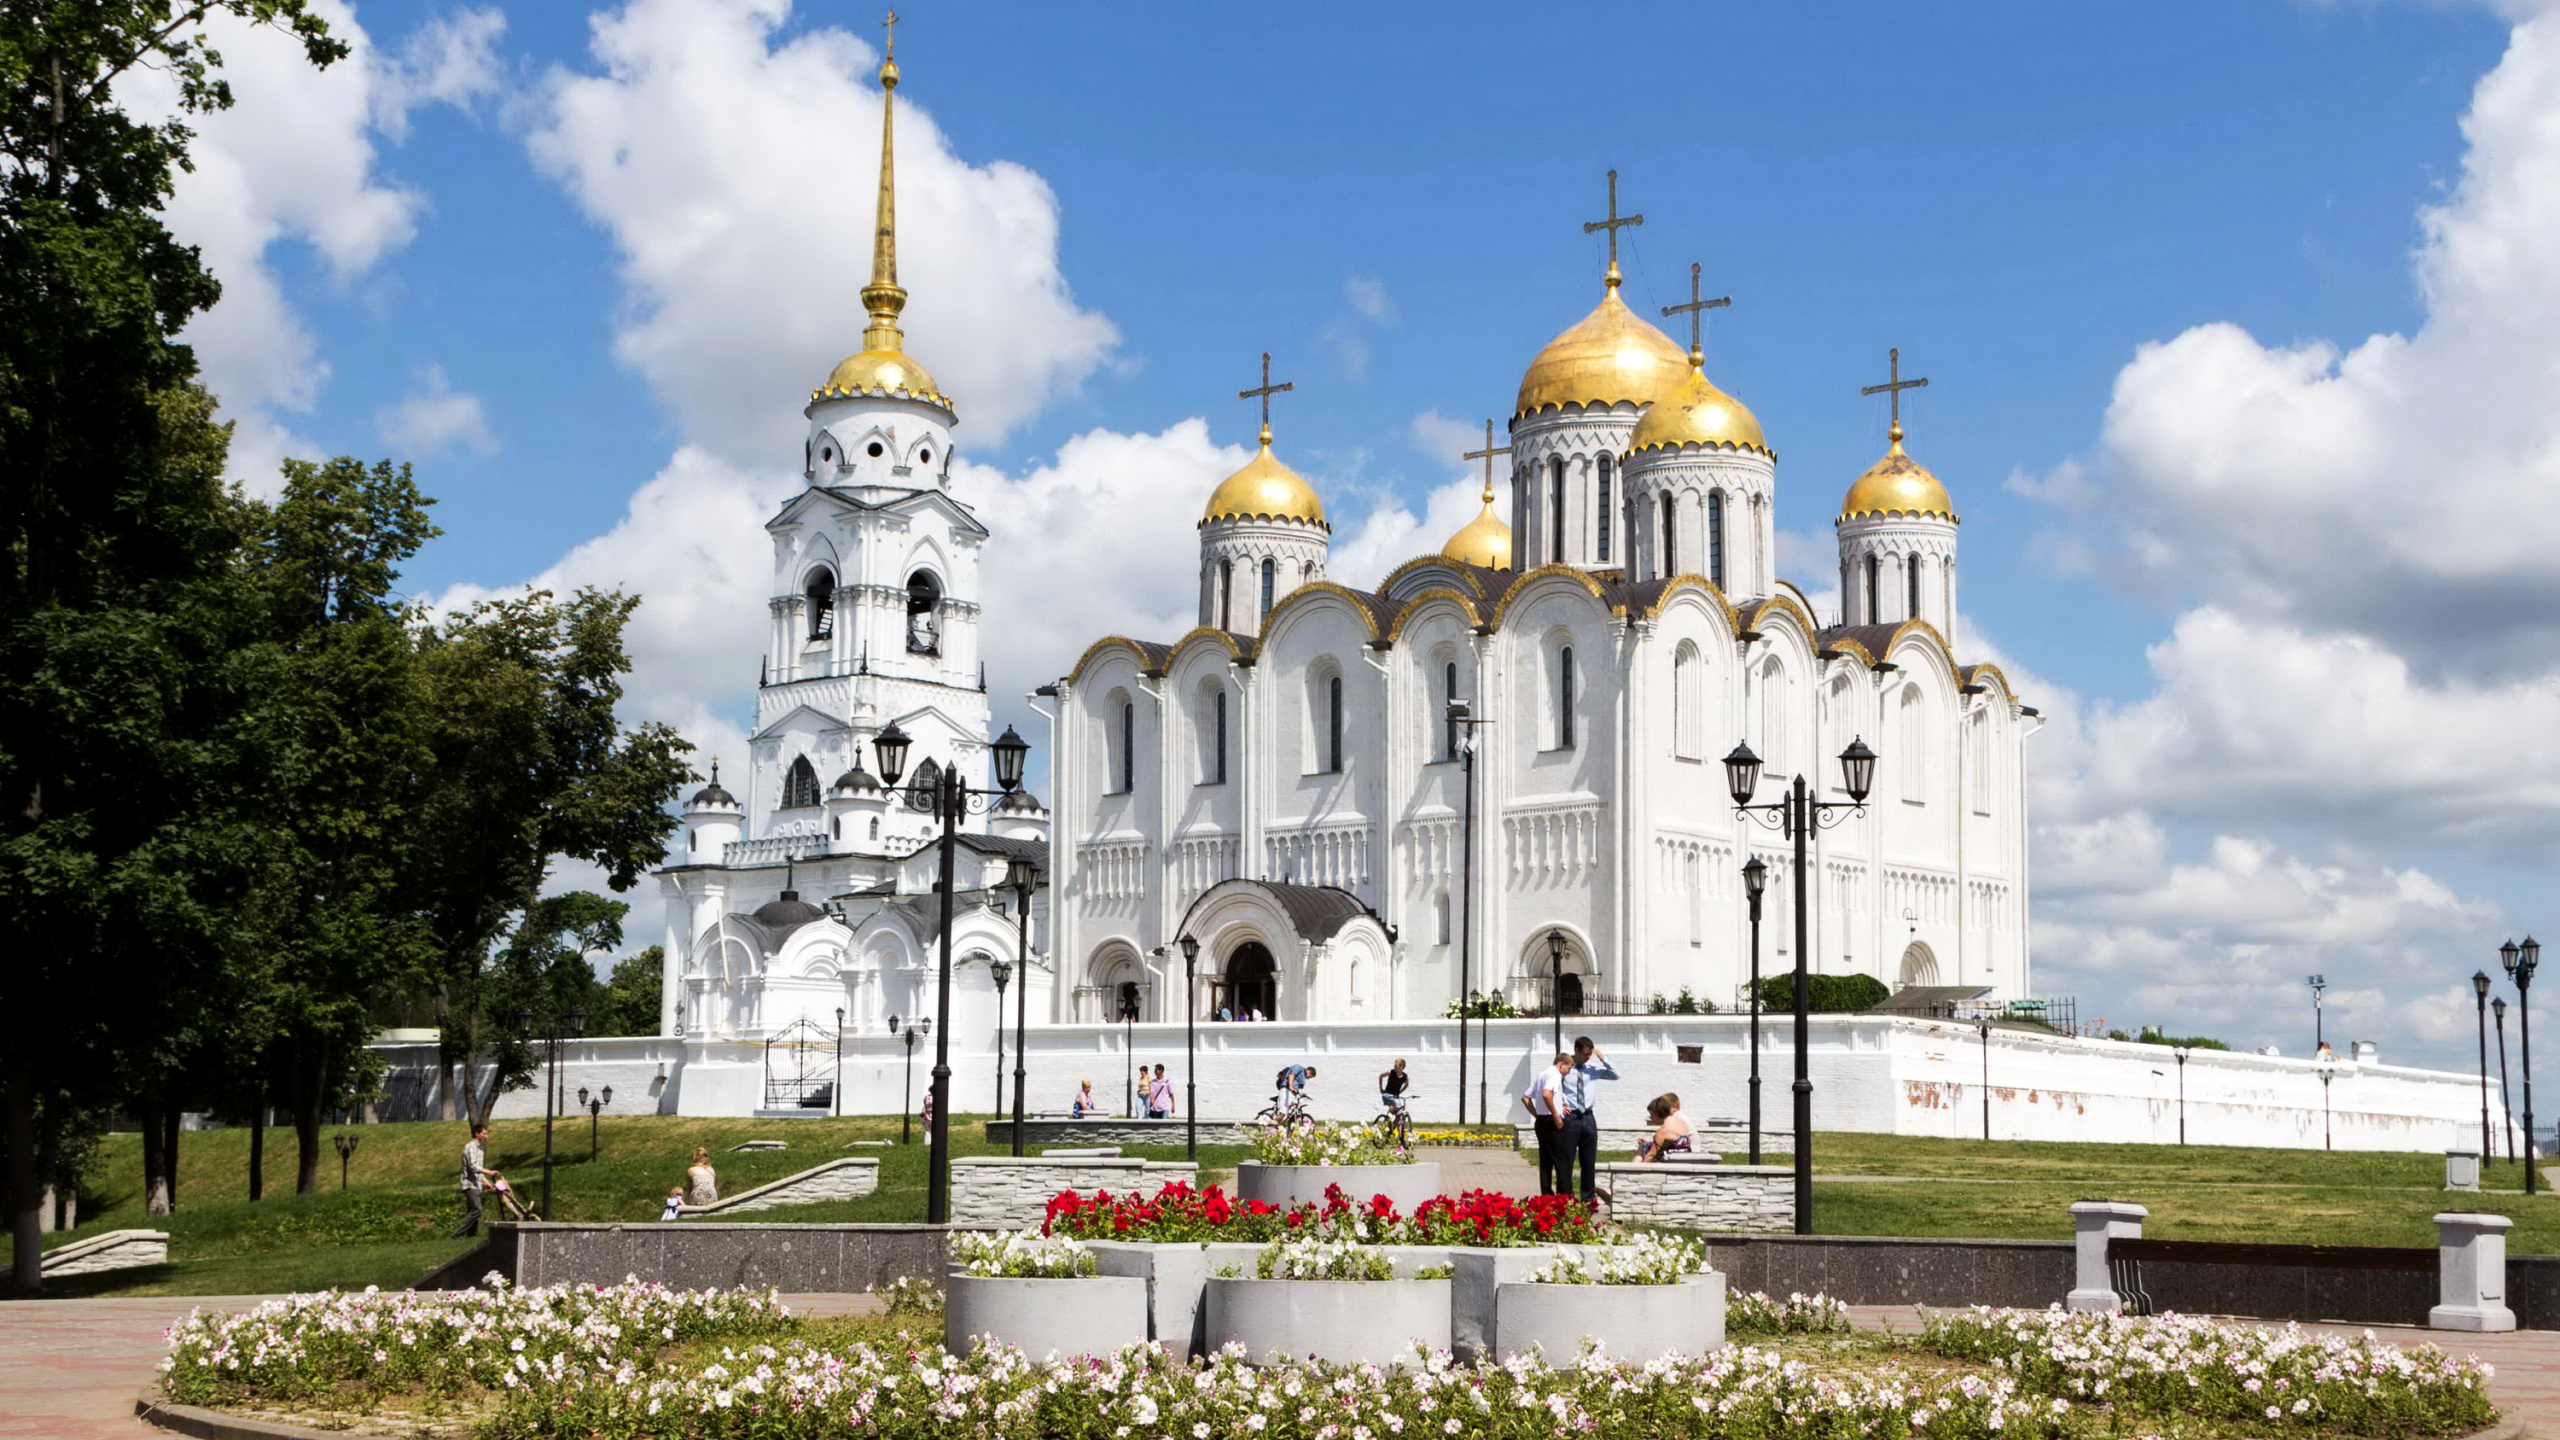 礼拜的地方, 拜占庭建筑, 中世纪建筑风格, 俄罗斯的弗拉基米尔, 城市 壁纸 2560x1440 允许